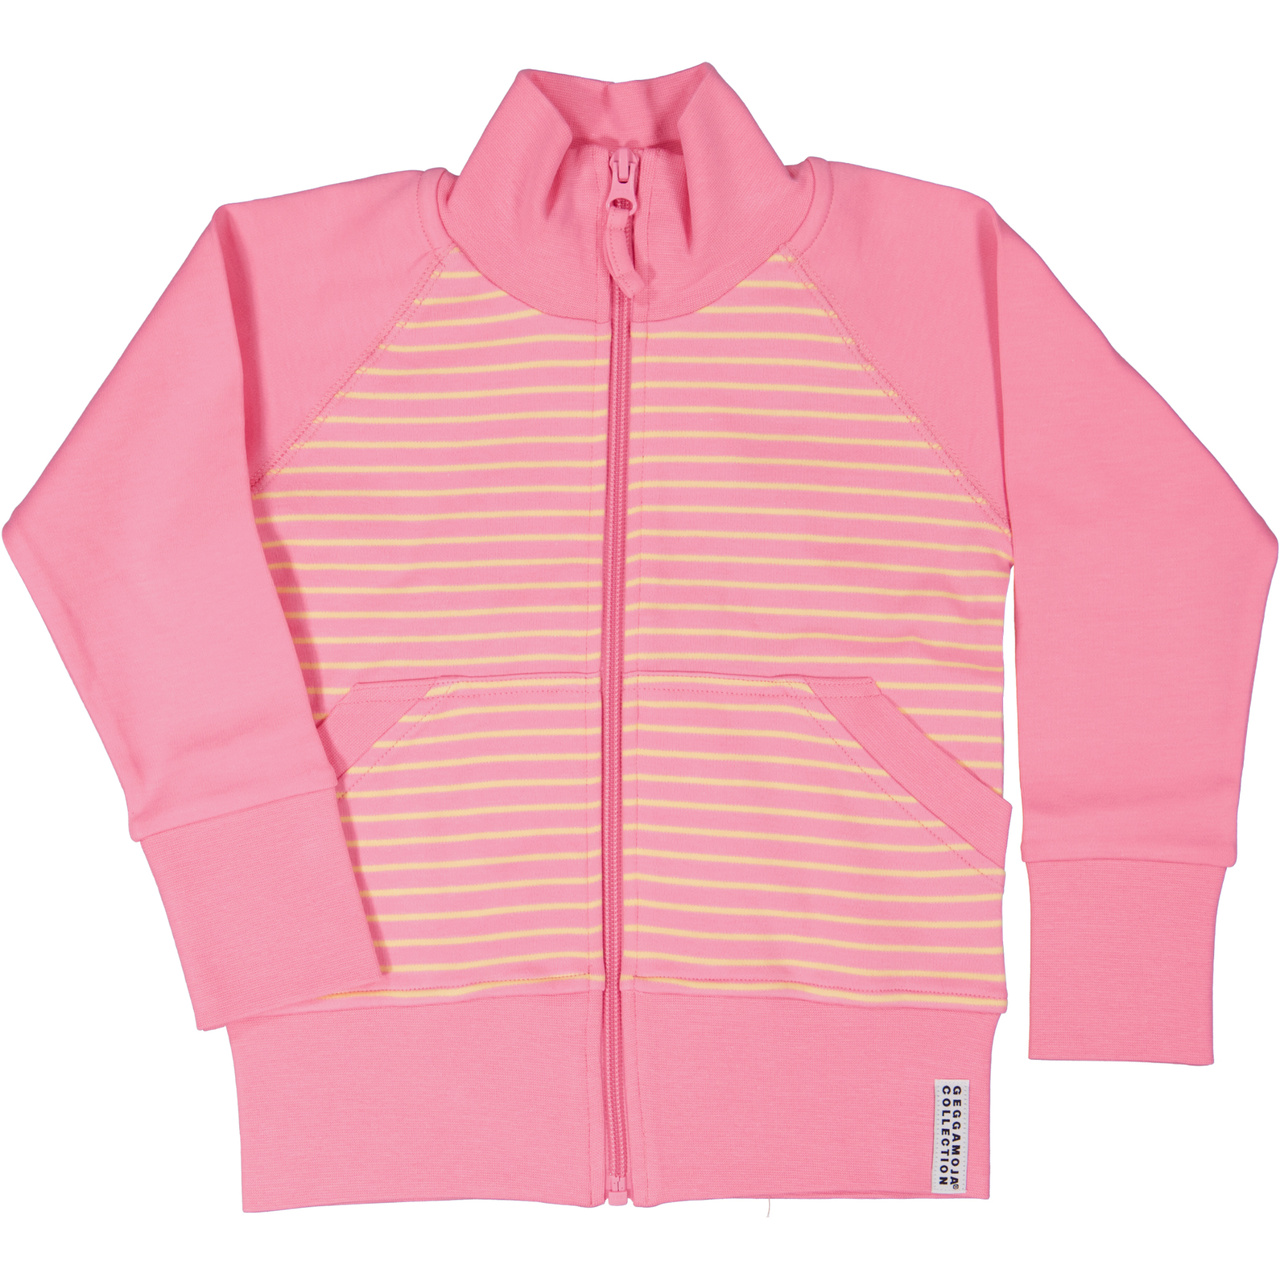 Zip sweater Pink/yellow  110/116